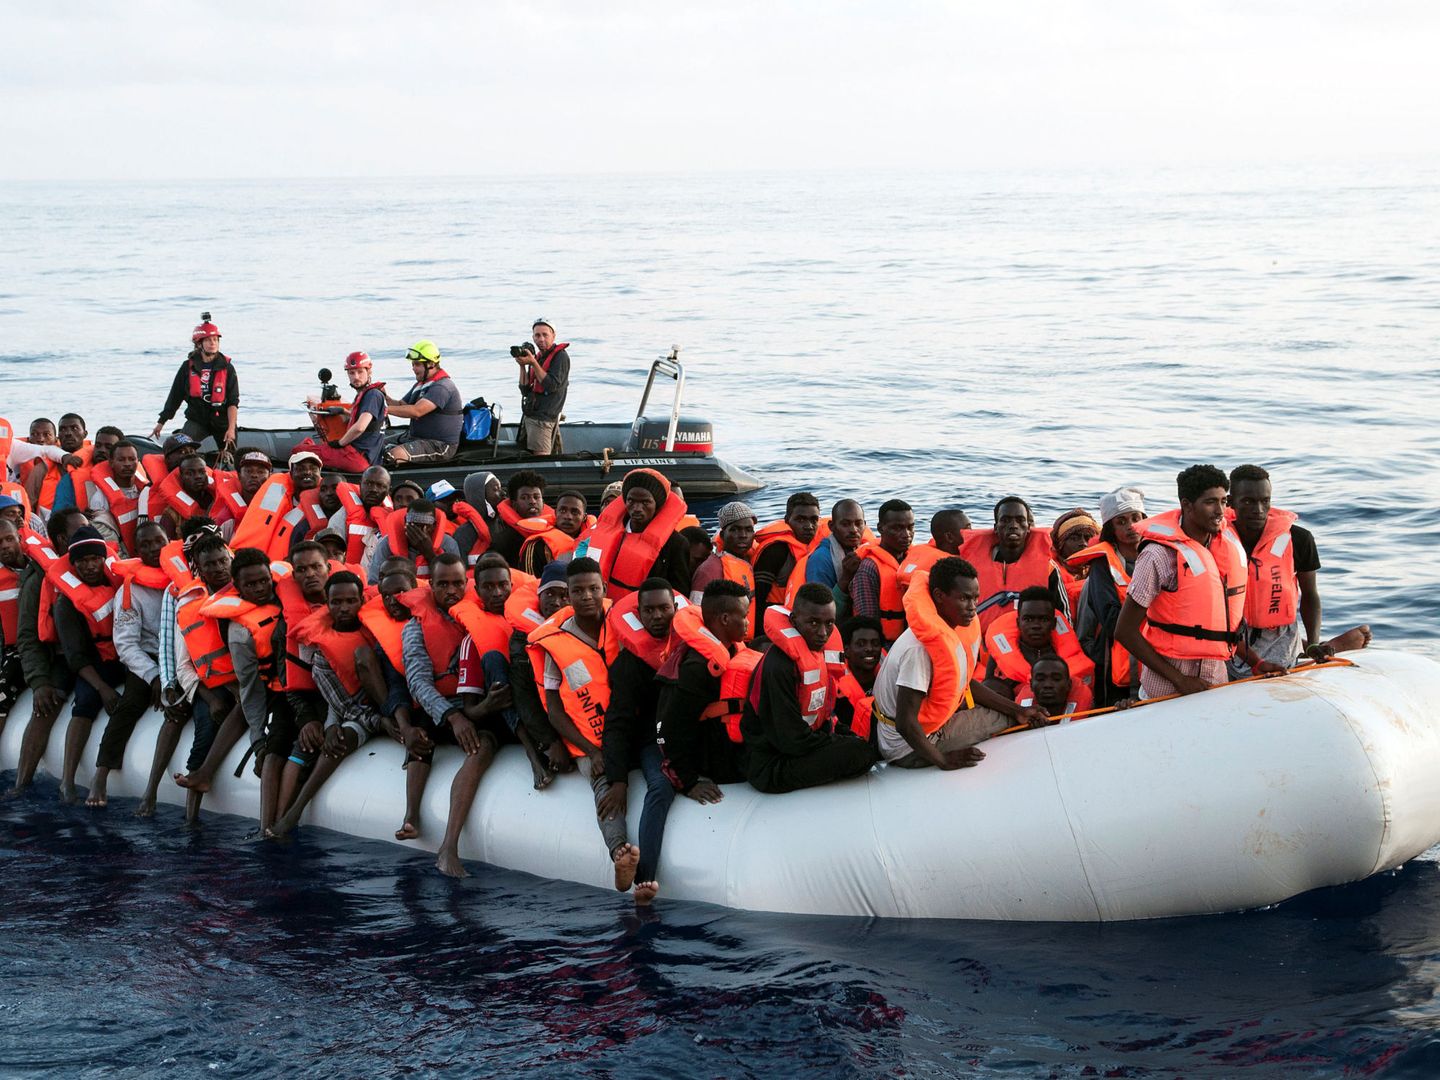 Inmigrantes en un bote de goma, a punto de ser rescatados por el barco Mission Lifeline en el Mediterráneo central, el 21 de junio de 2018. (Reuters)